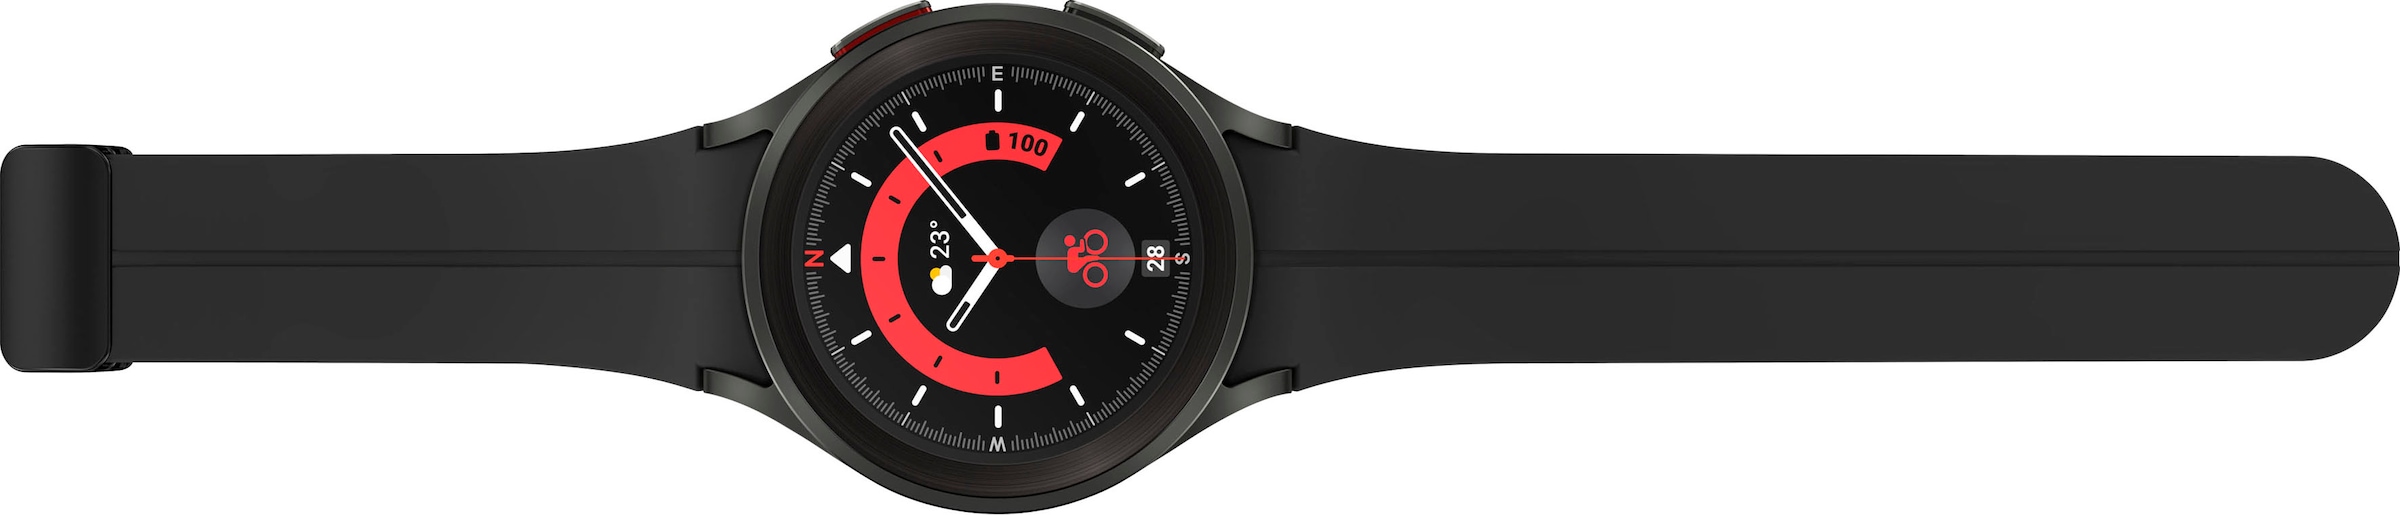 Samsung Smartwatch »Galaxy Watch 5 Pro 45mm LTE«, (Wear OS by Samsung Fitness Uhr, Fitness Tracker, Gesundheitsfunktionen)